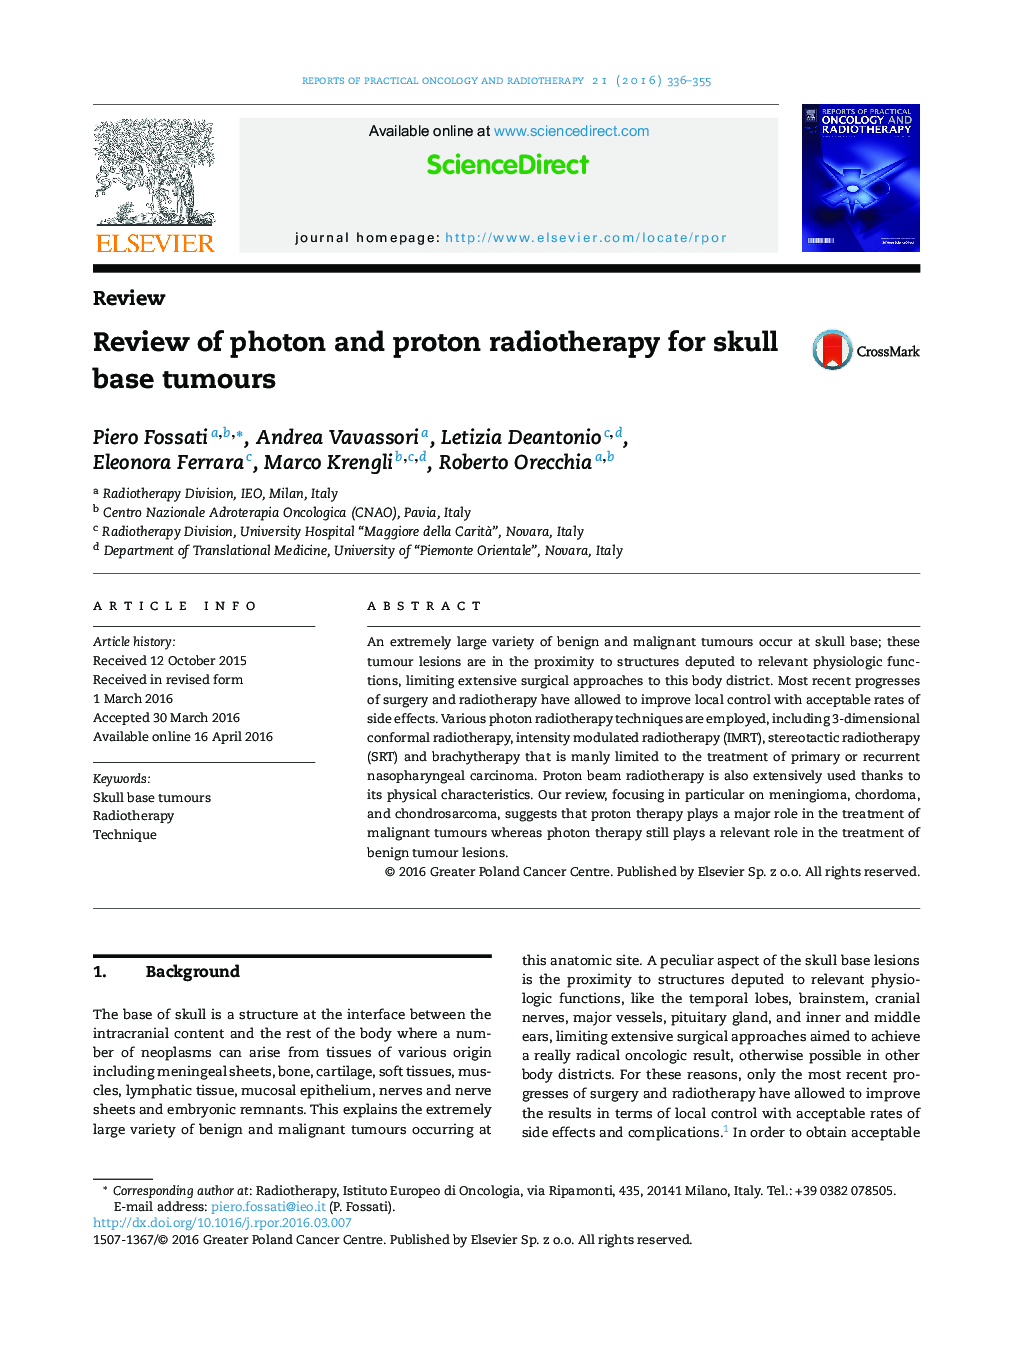 نقد و بررسی فوتون و پروتون رادیوتراپی برای تومورهای قاعده جمجمه